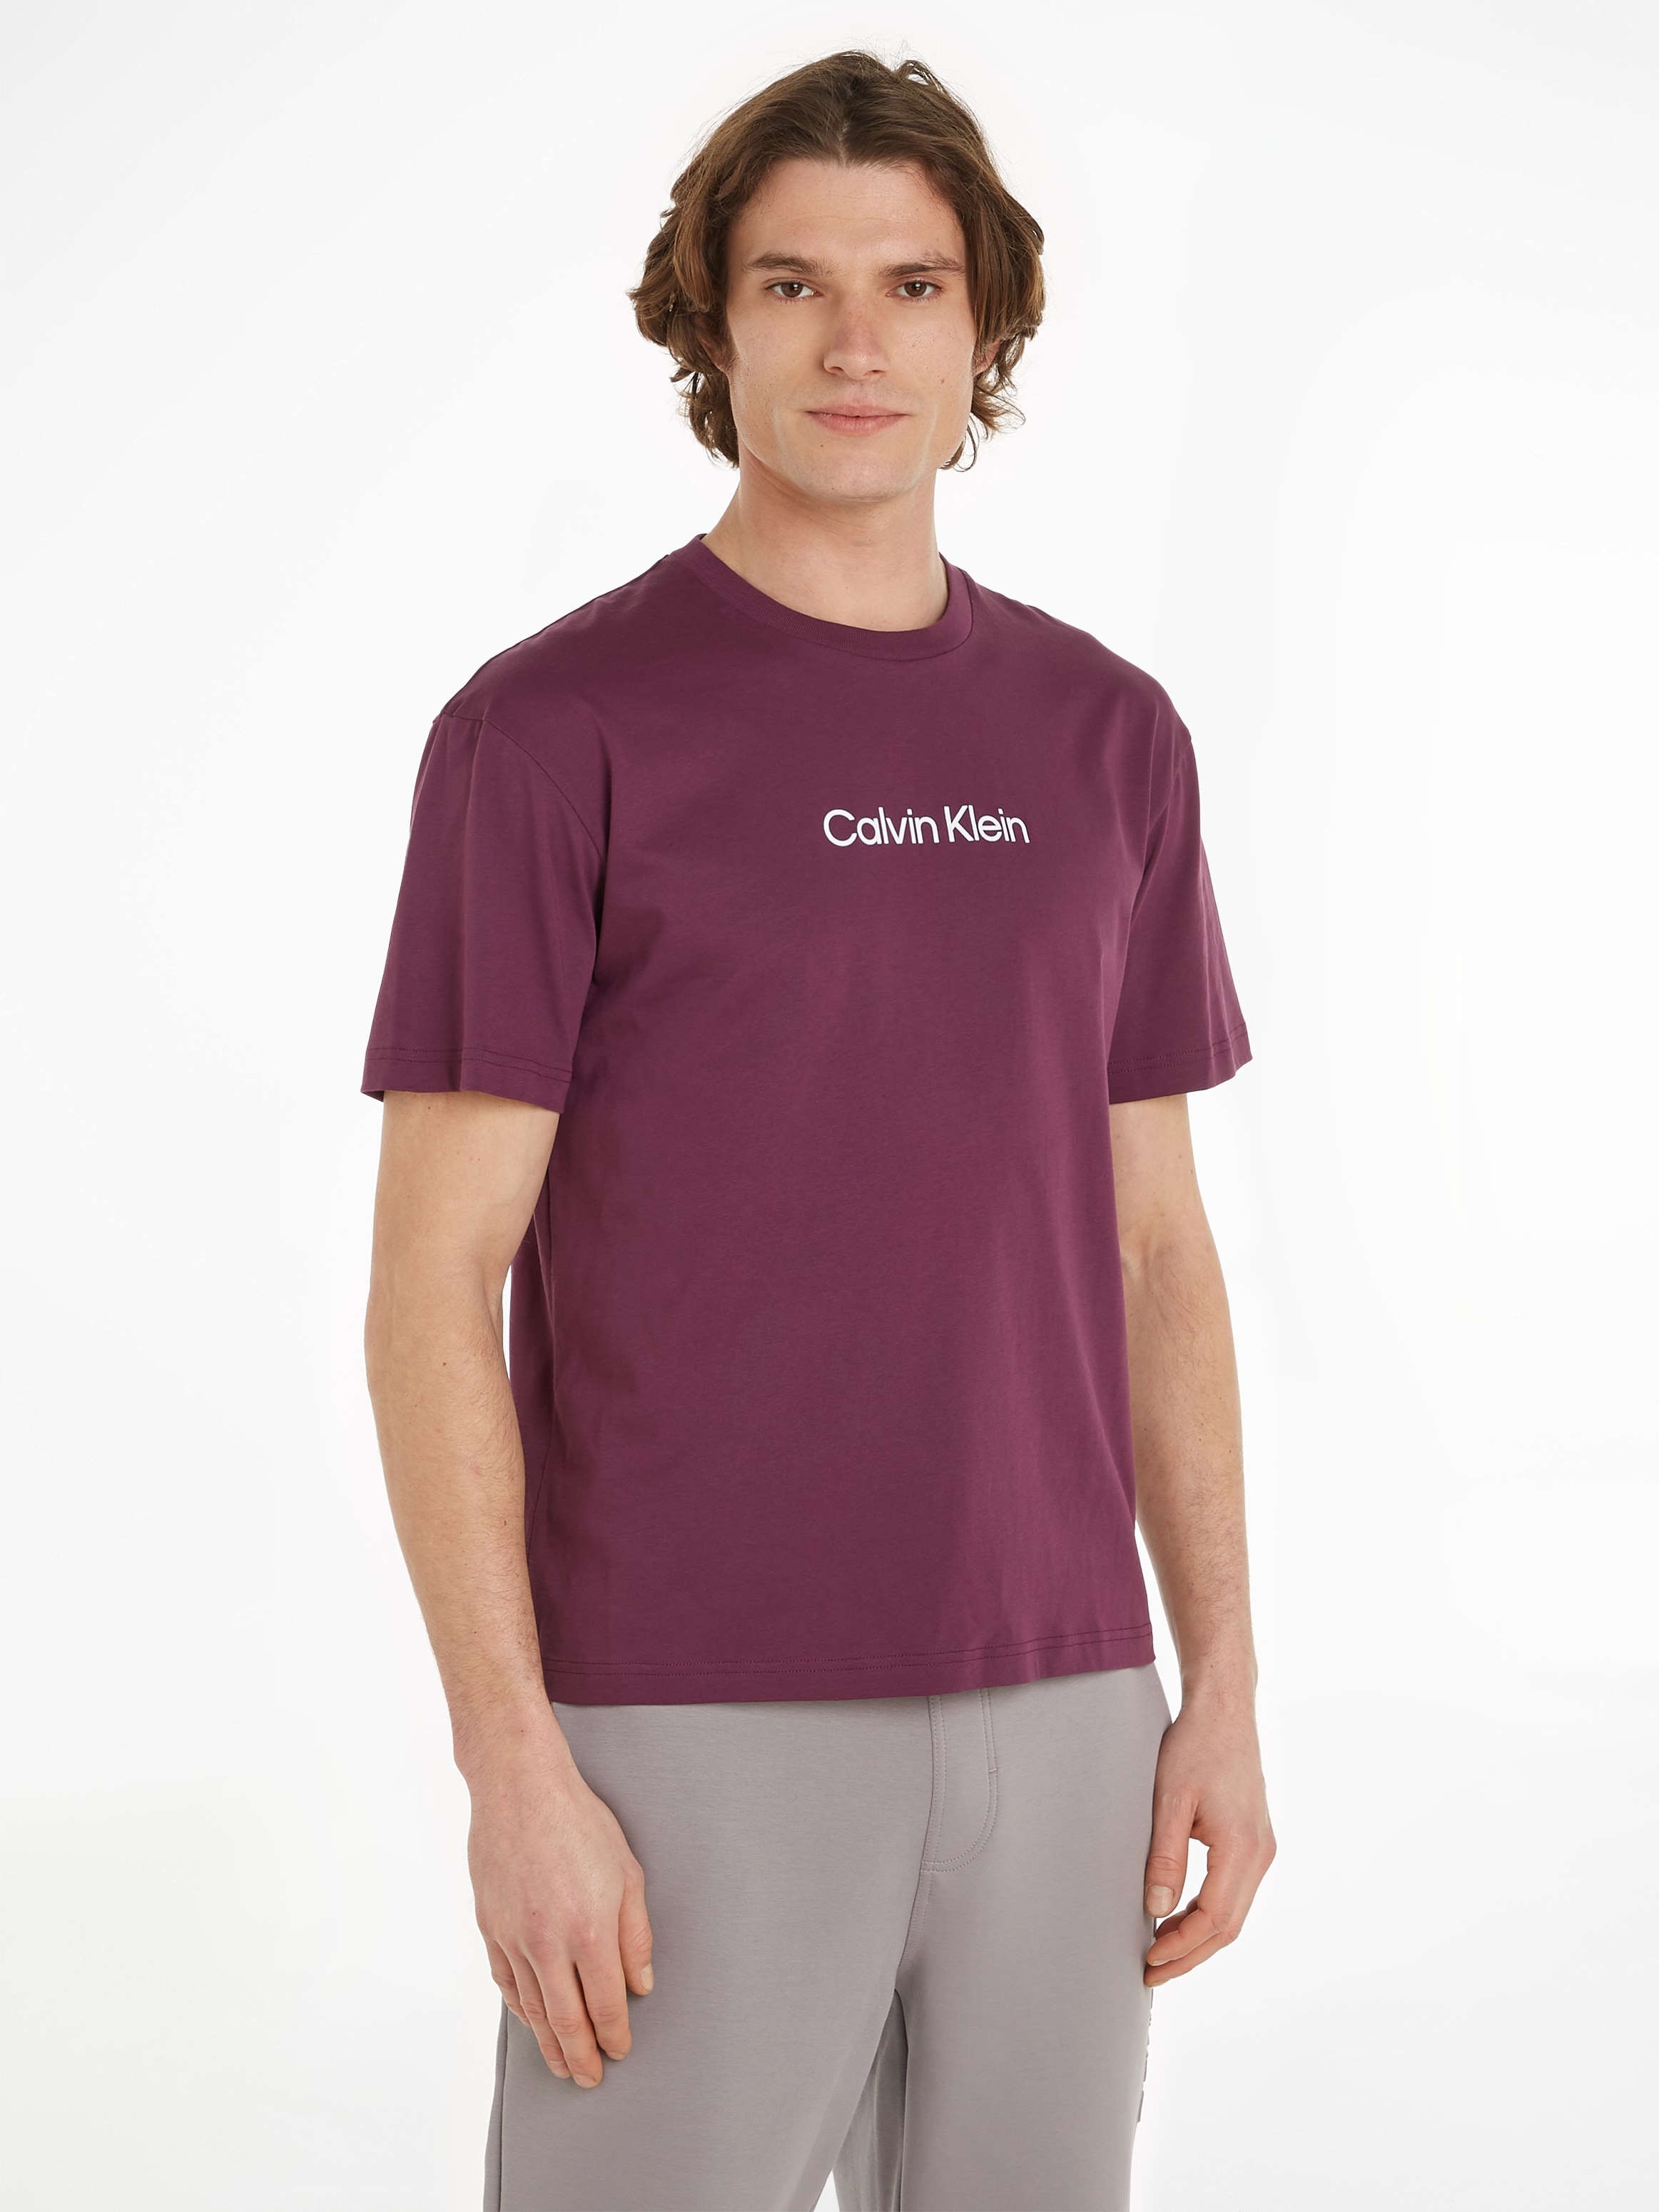 online T-Shirt mit Markenlabel bei »HERO aufgedrucktem Klein Calvin LOGO OTTO kaufen T-SHIRT«, COMFORT